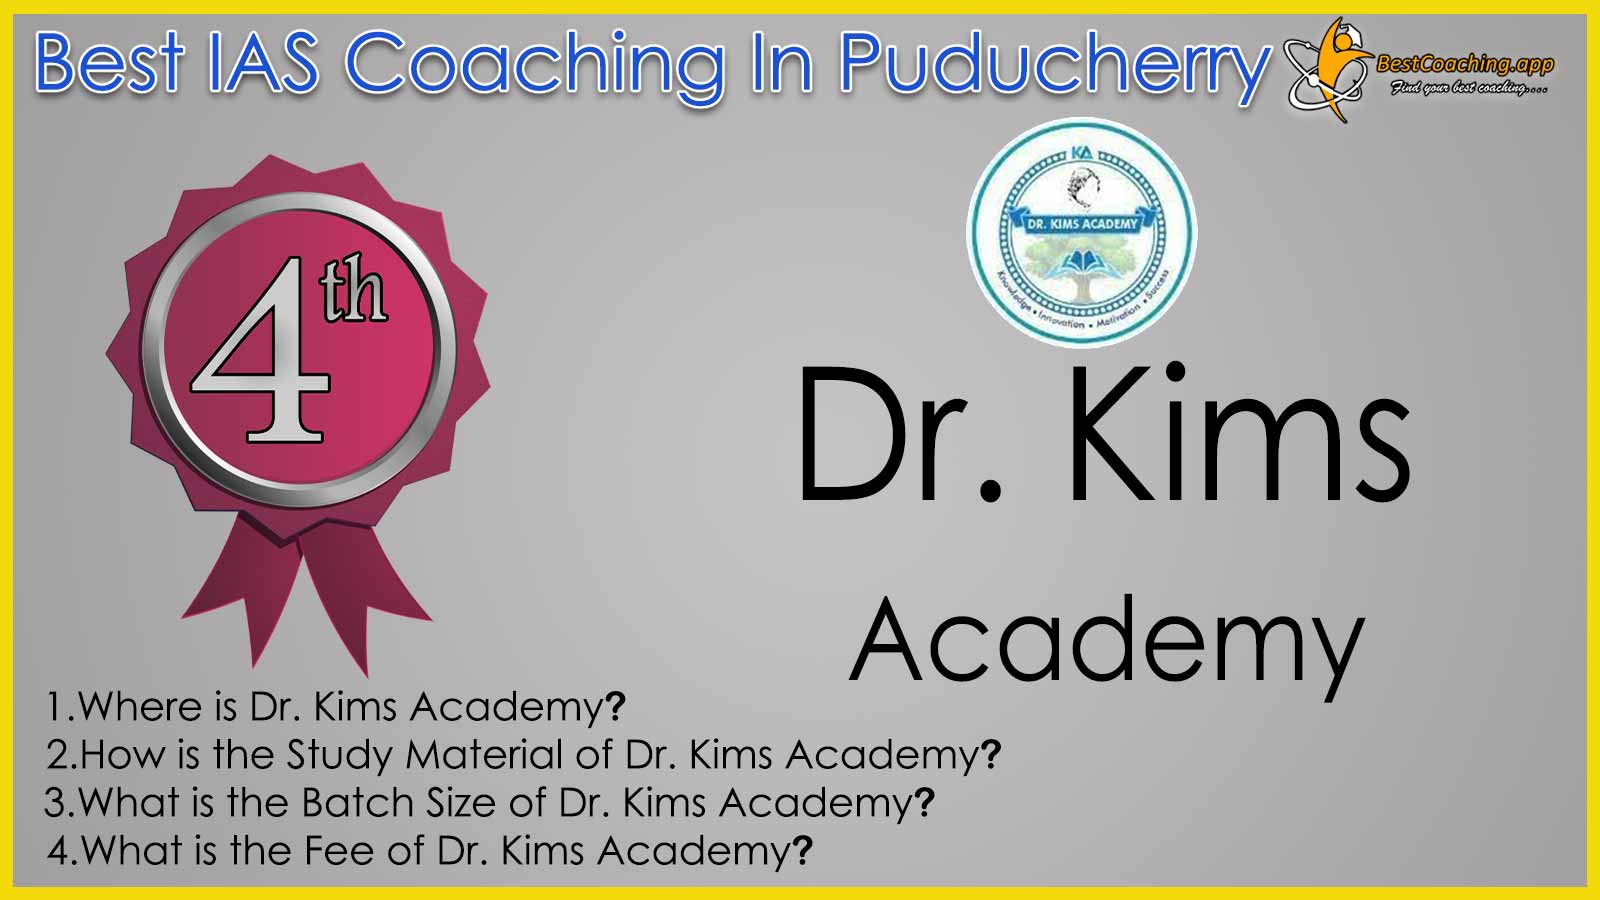 Dr. Kims Academy